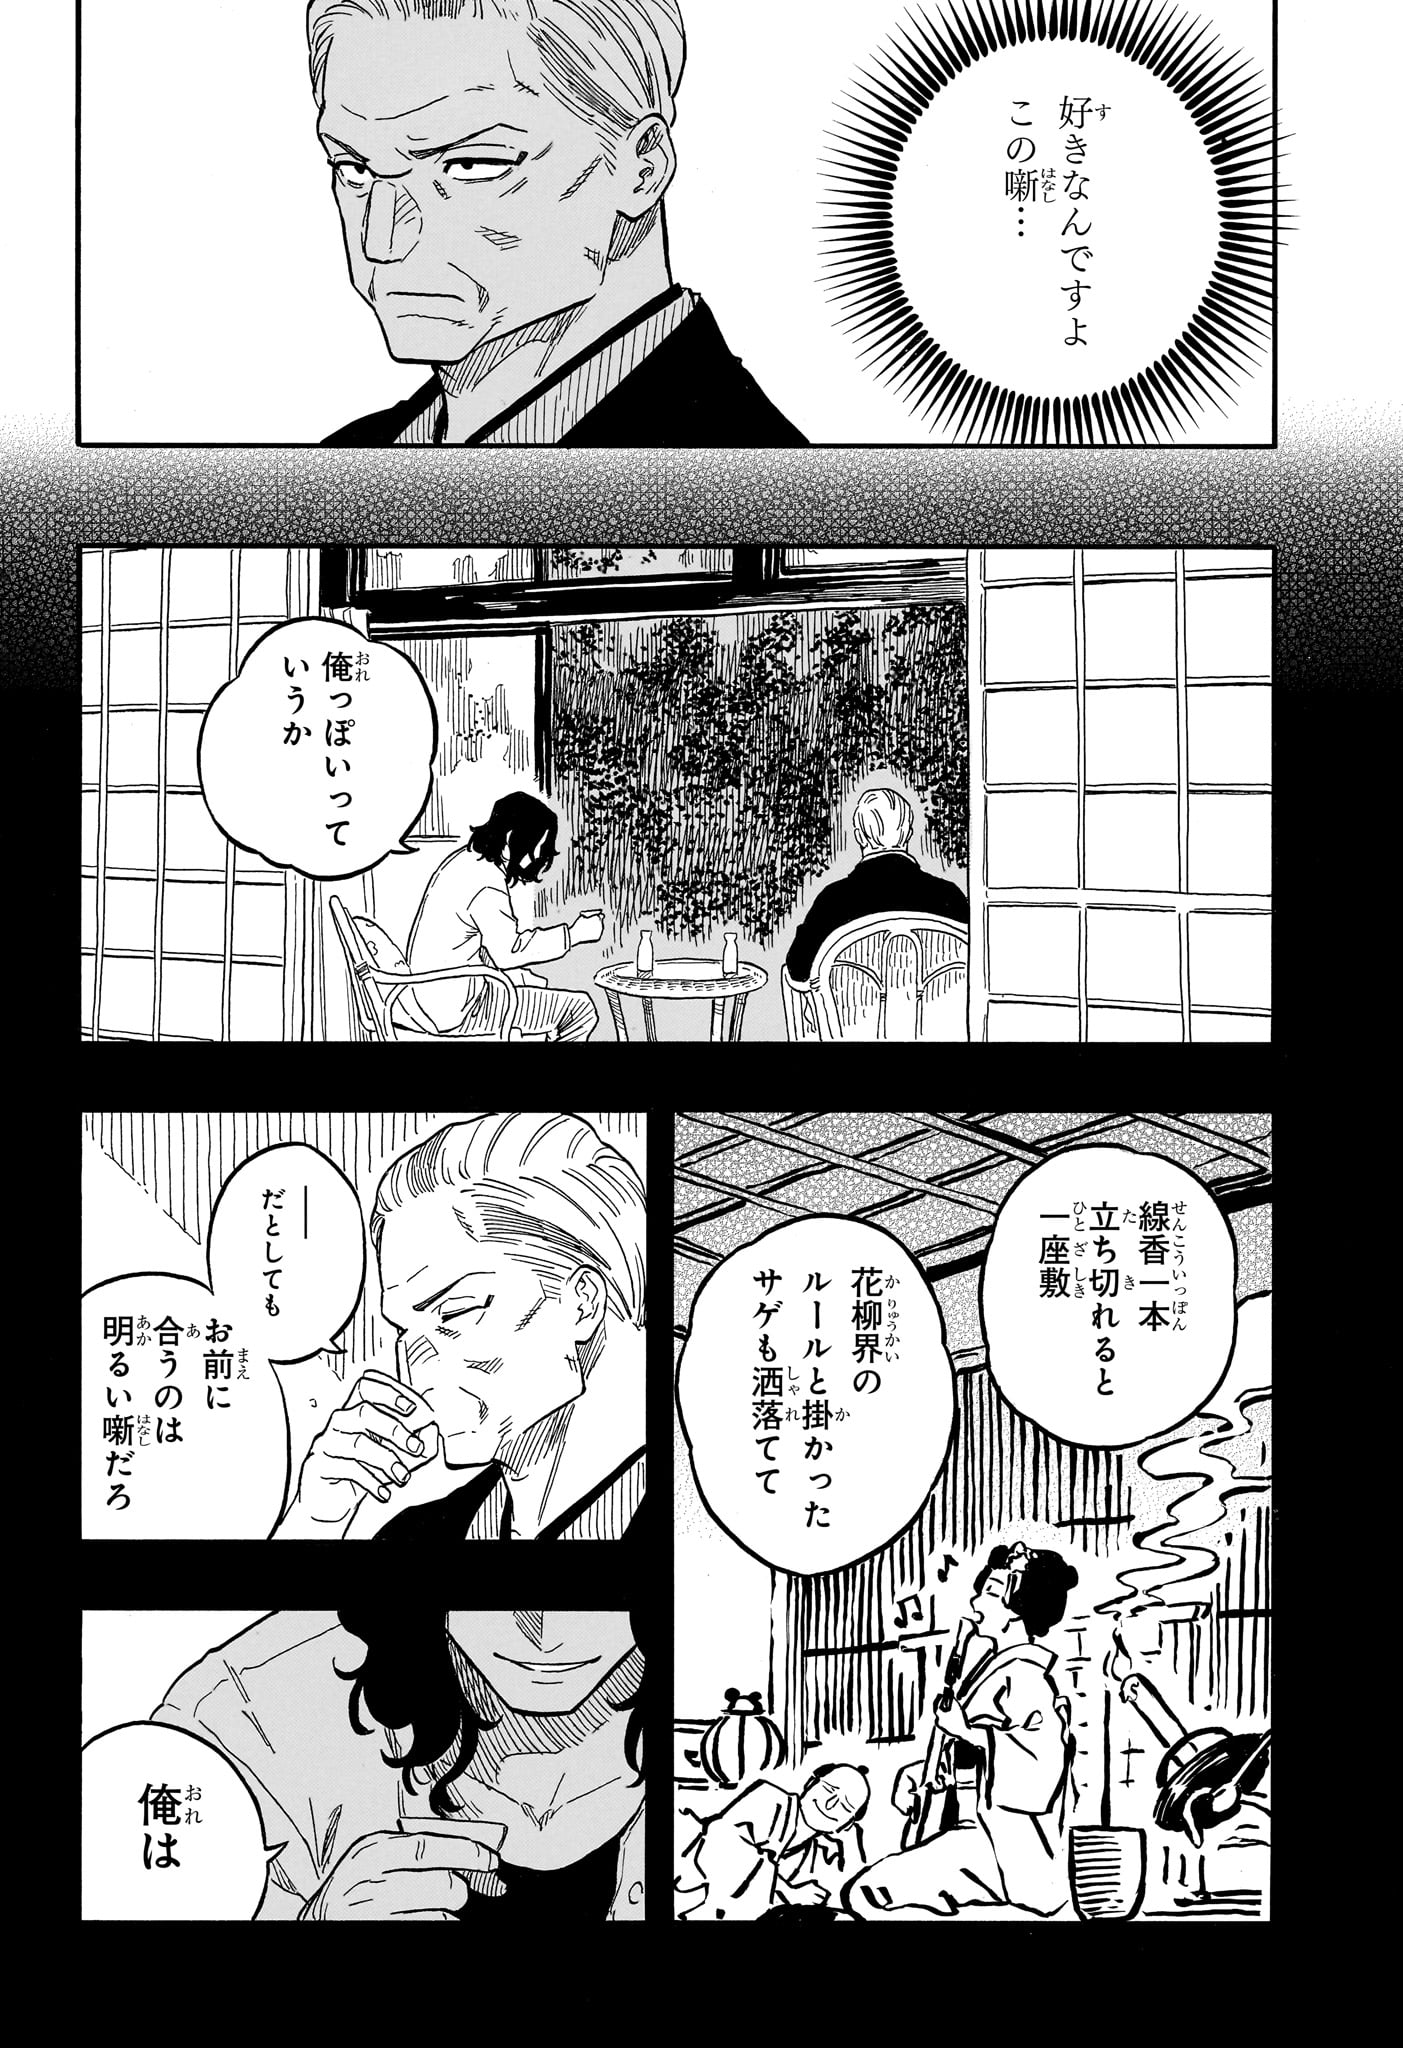 Akane-Banashi - Chapter 115 - Page 6